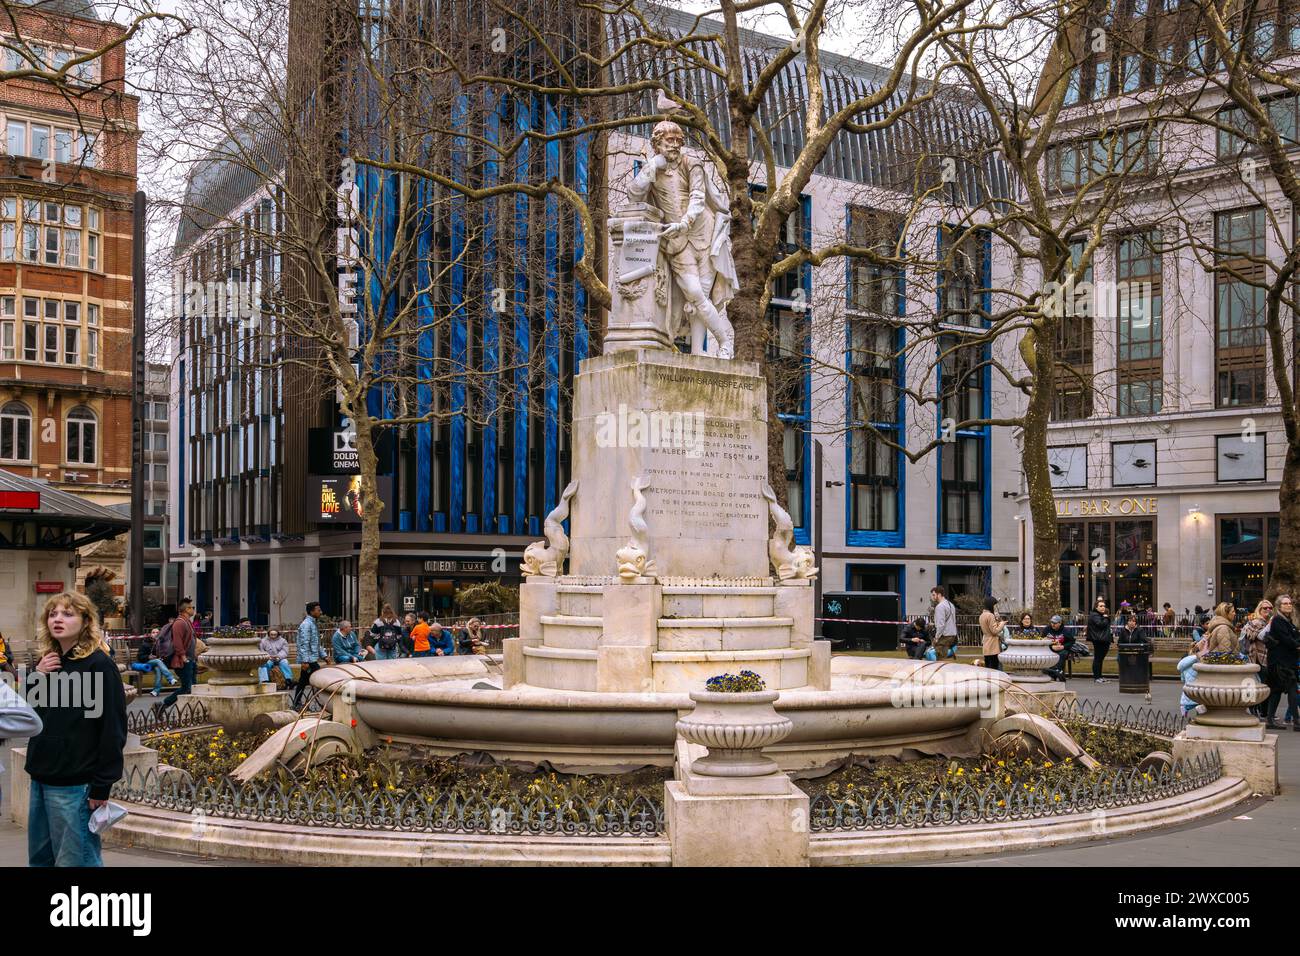 Una statua di William Shakespeare ha costituito il fulcro dei Leicester Square Gardens di Londra dal 1874. L'iconico cinema Odeon Luxe sul retro. Foto Stock